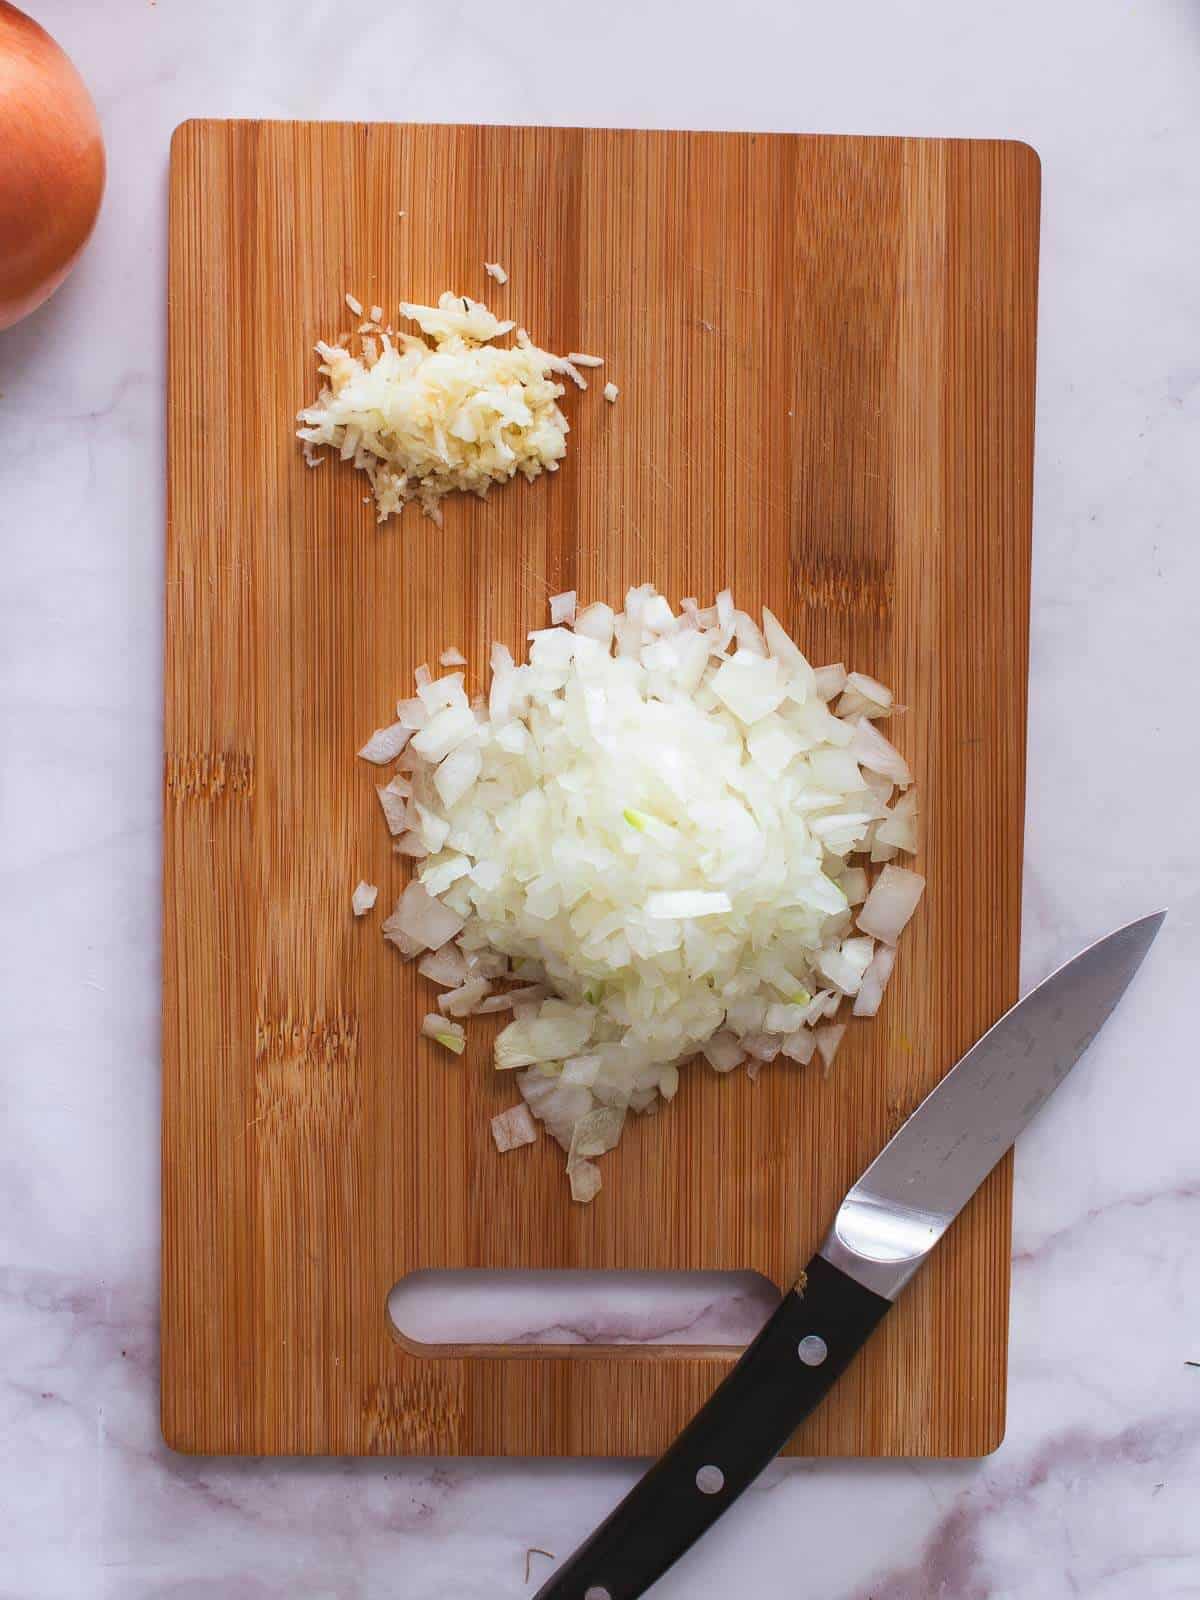 Prepara las cebollas y el ajo - pela y pica tus cebollas. Pica finamente los dientes de ajo.